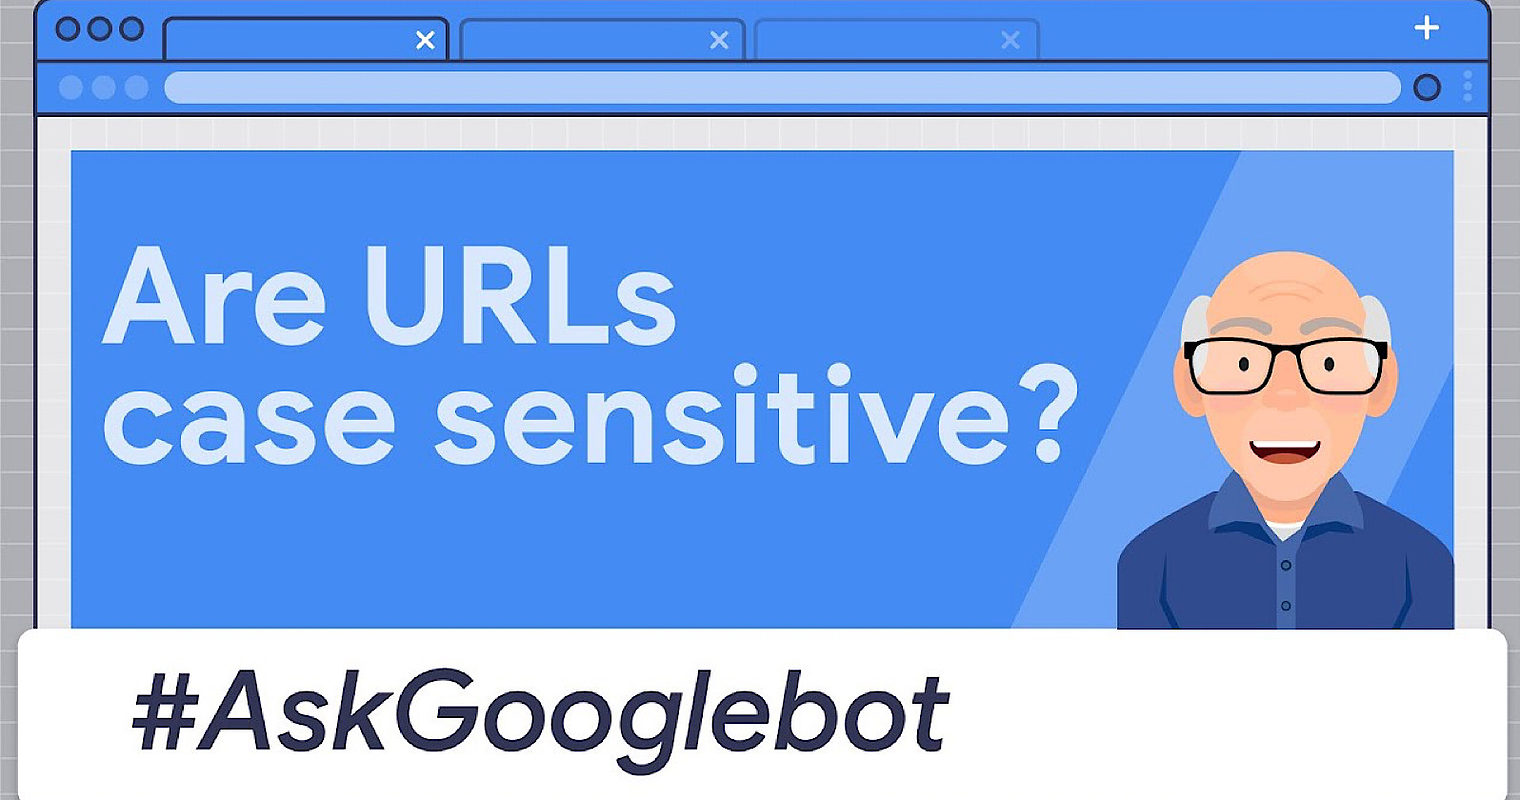 Google: URLs Are Case Sensitive